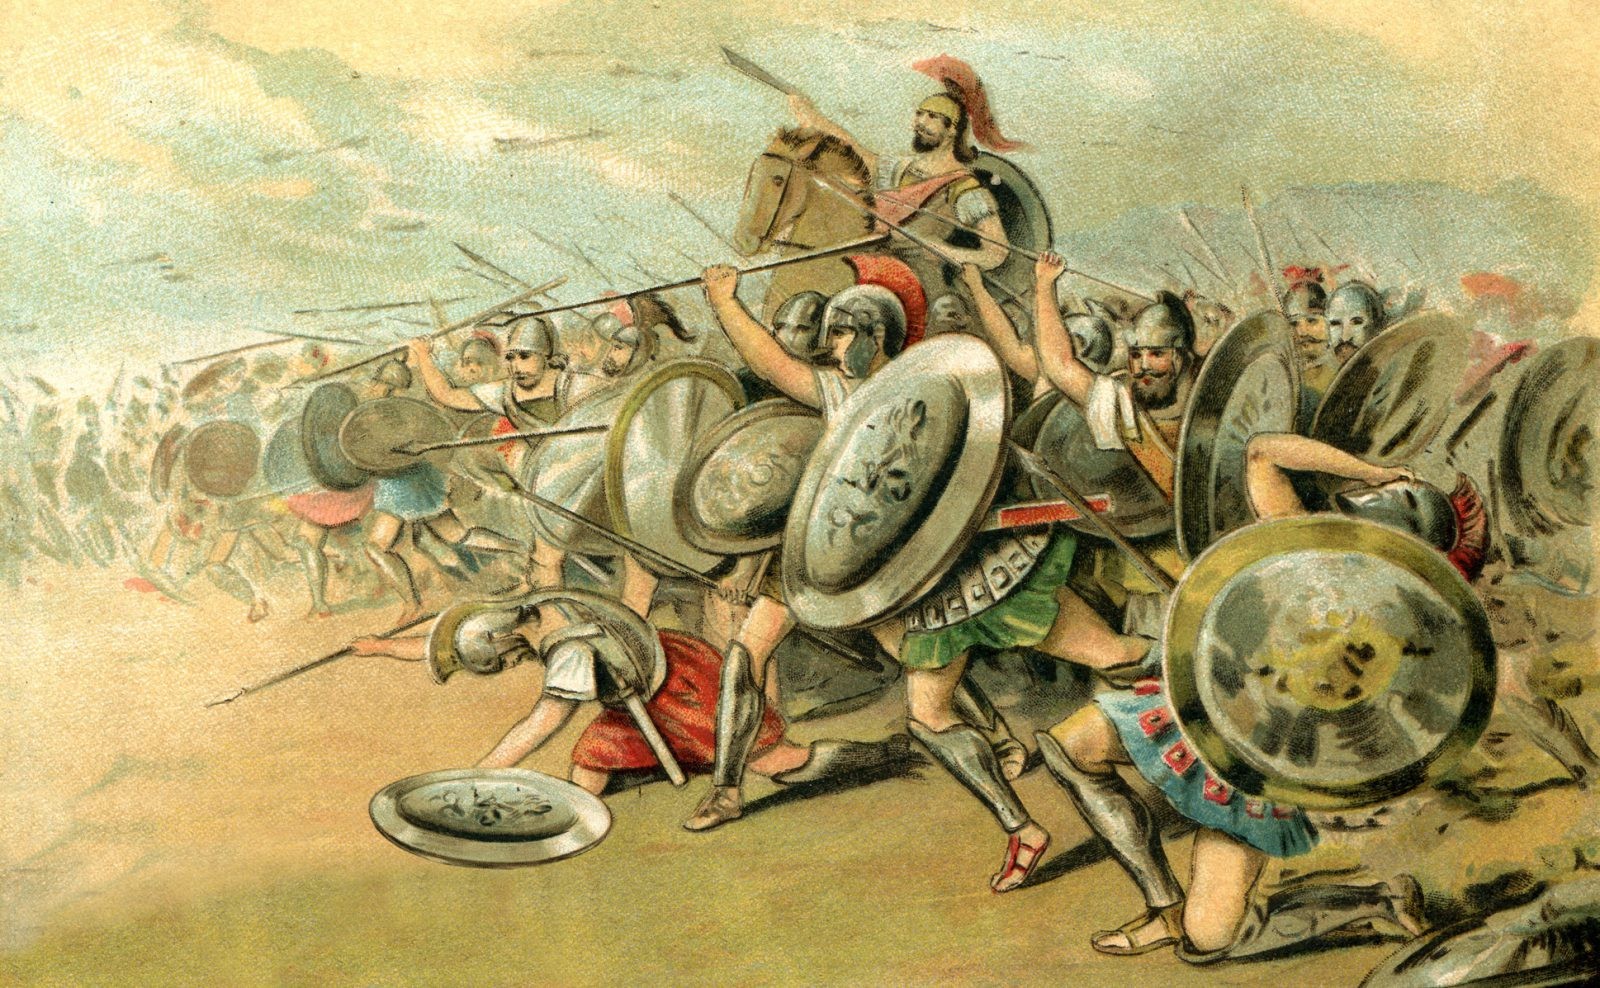 Jak wyglądało życie w Sparcie? Prawdy i mity o Spartanach